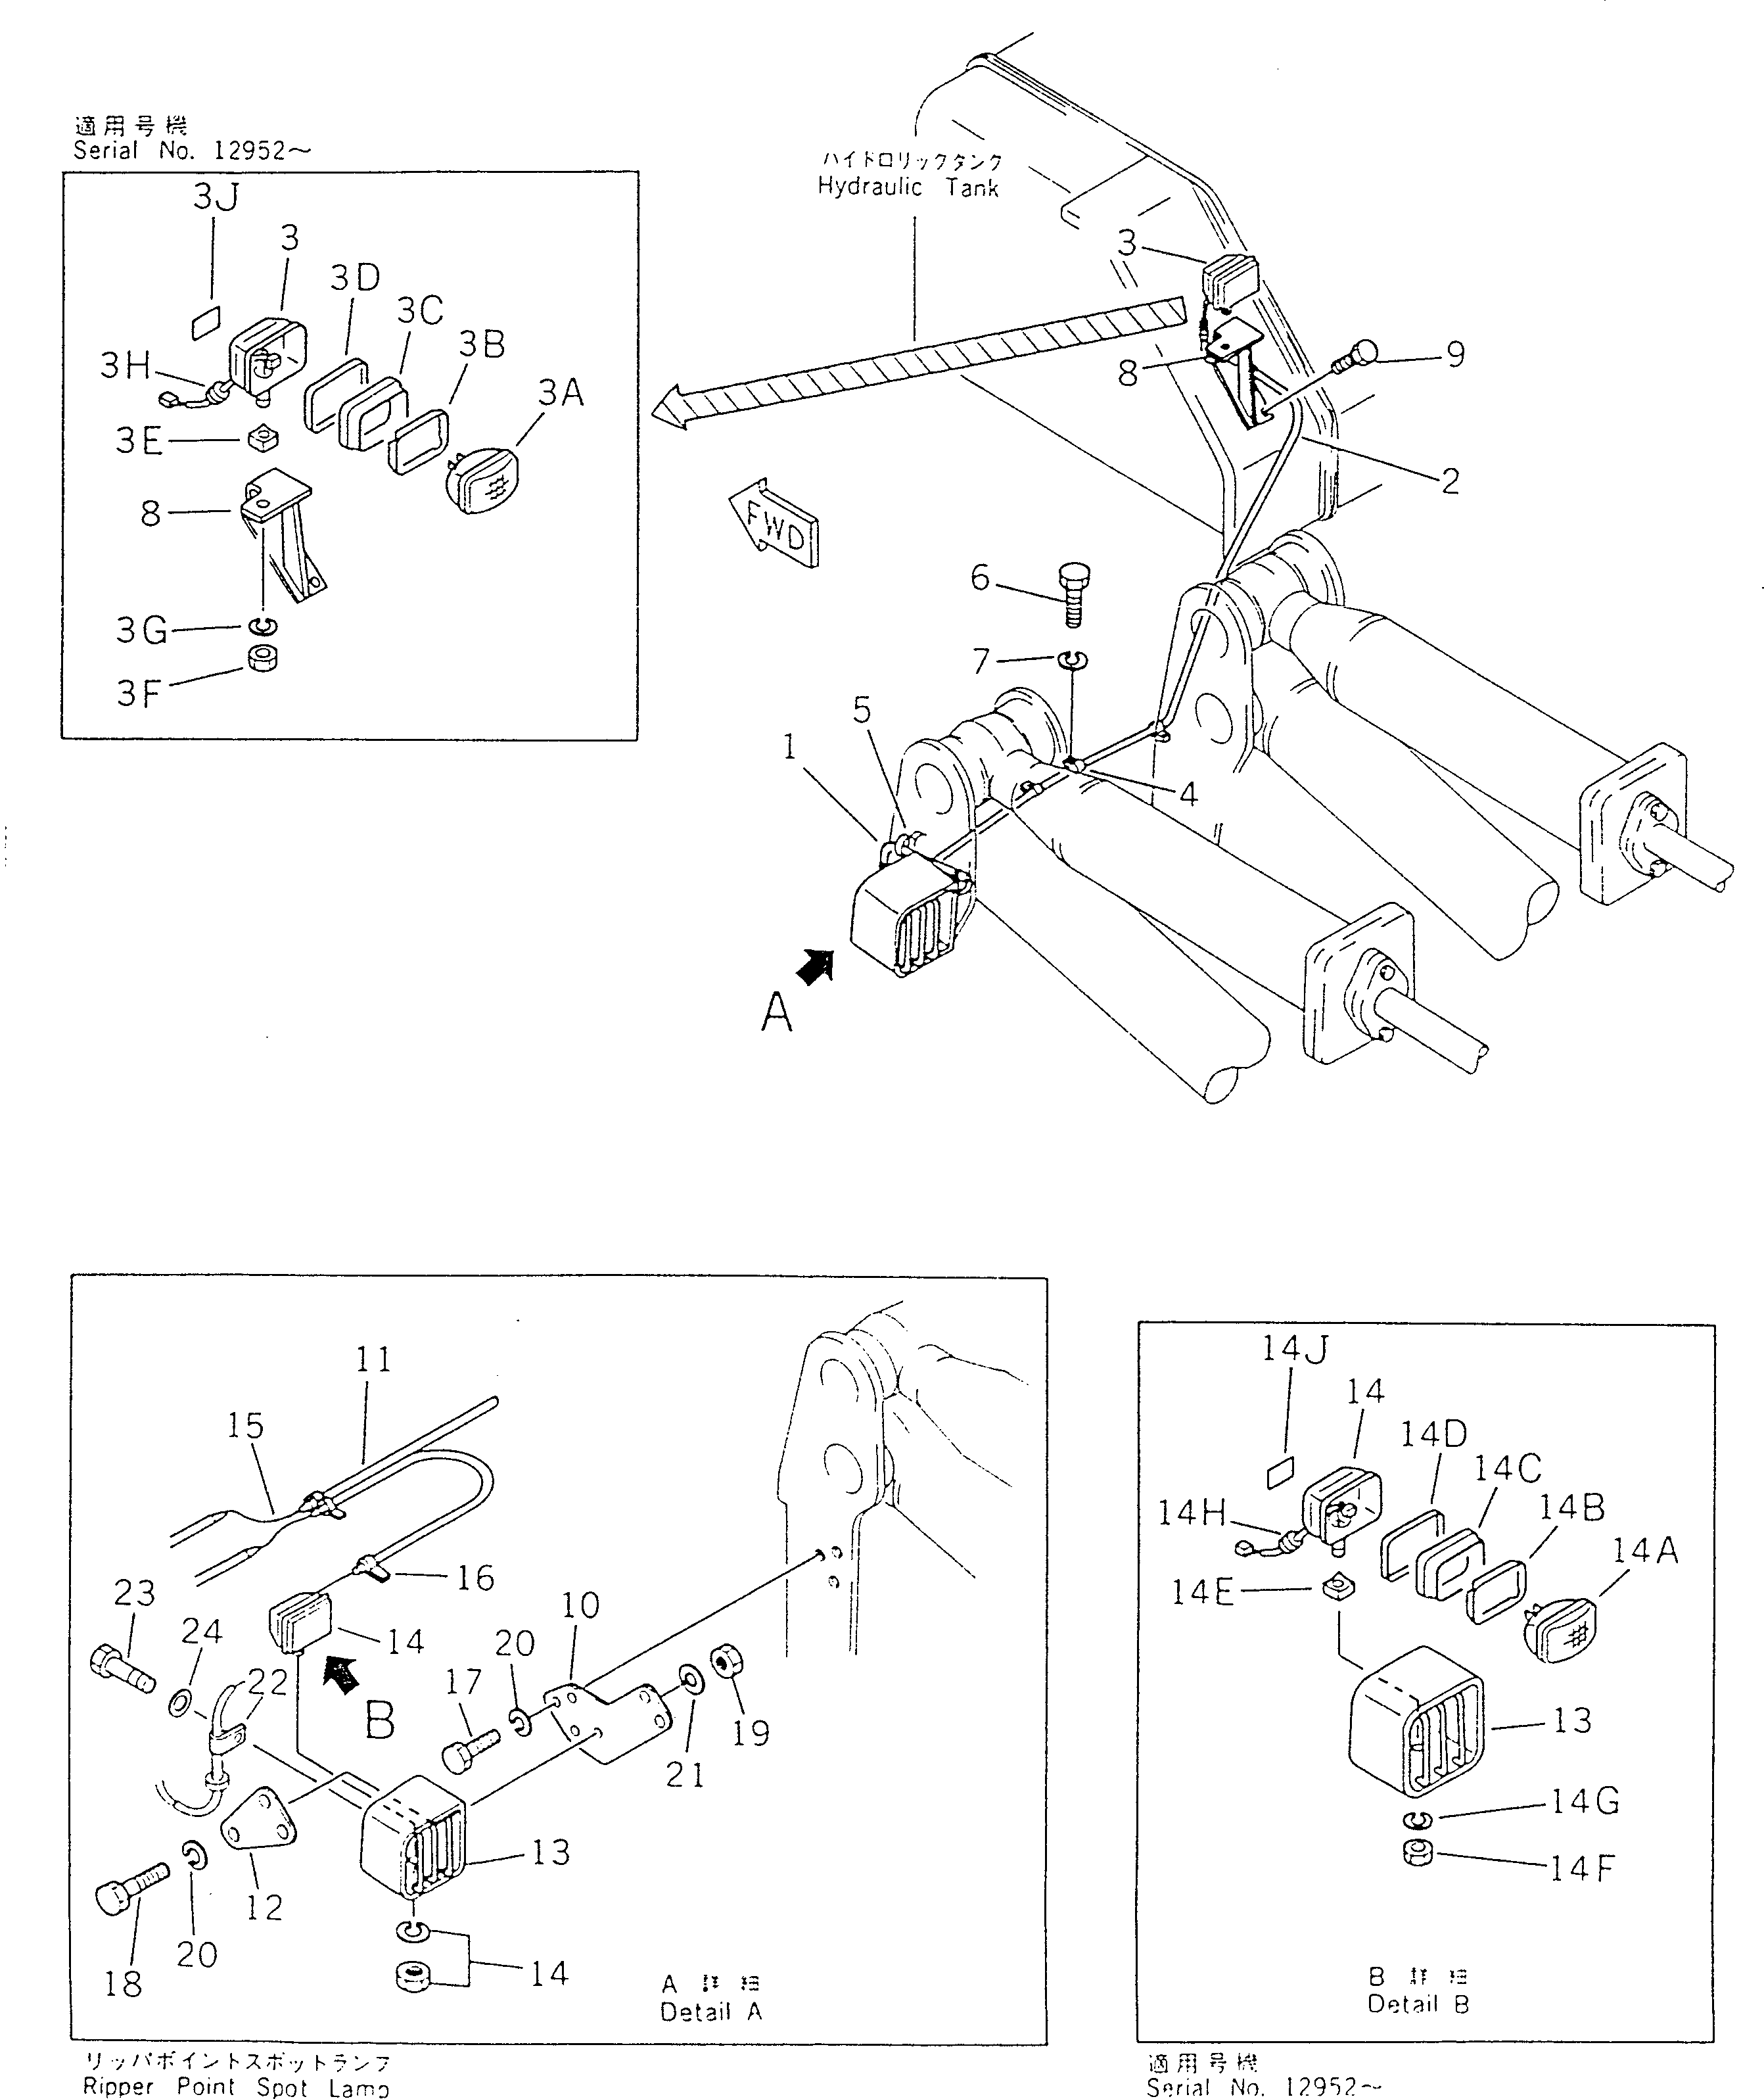 240. RIPPER ELECTRICAL SYSTEM [7541] - Komatsu part D355A-5 S/N 12622-UP [d355a-5c]